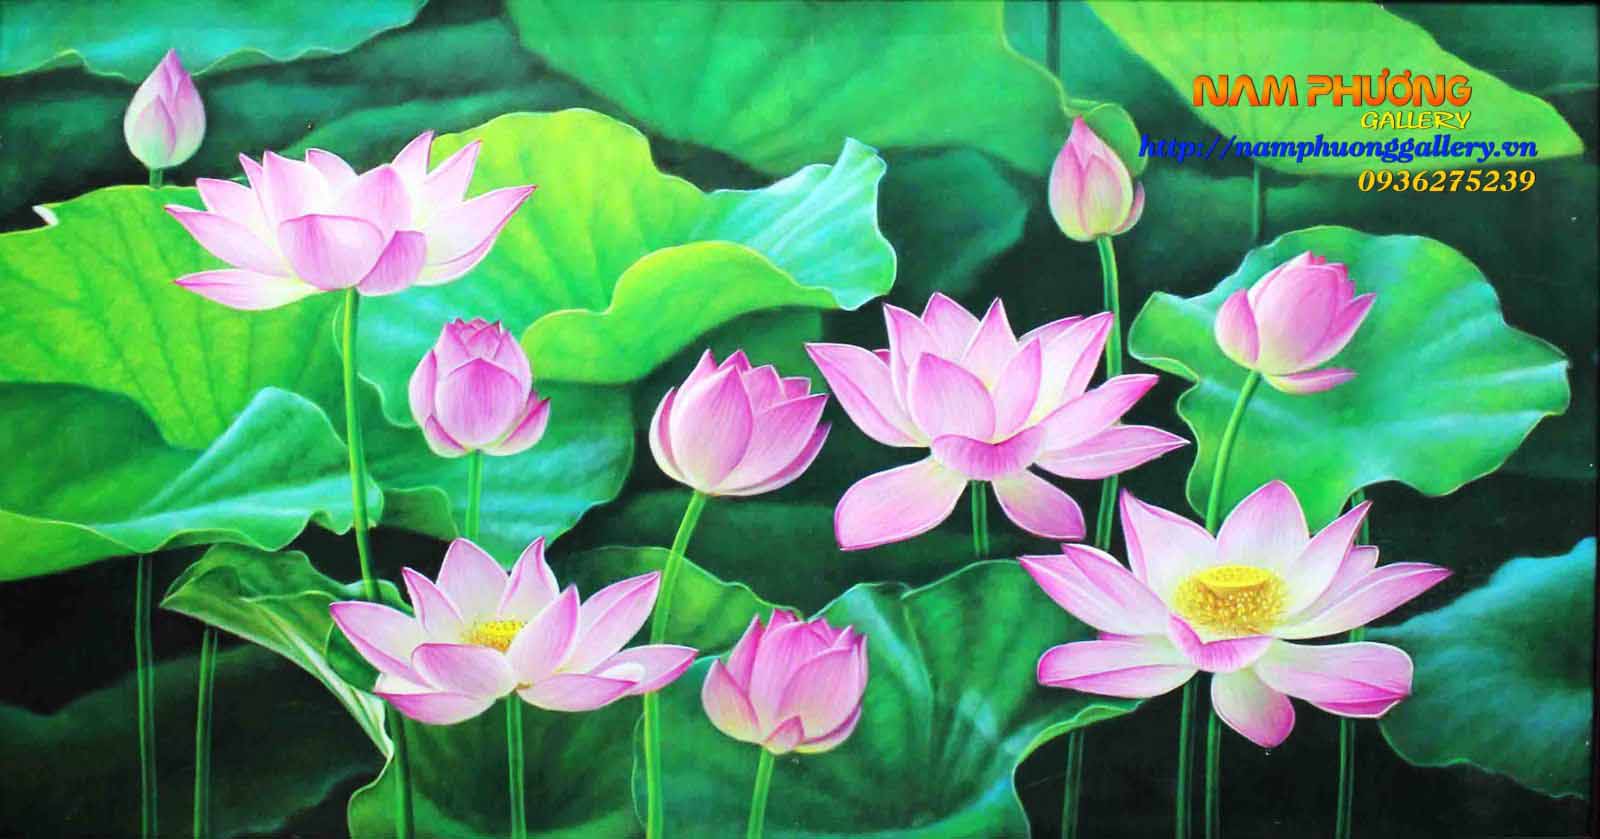 Cách vẽ hoa sen đơn giản nhất l How to draw Lotus flower step by step   YouTube